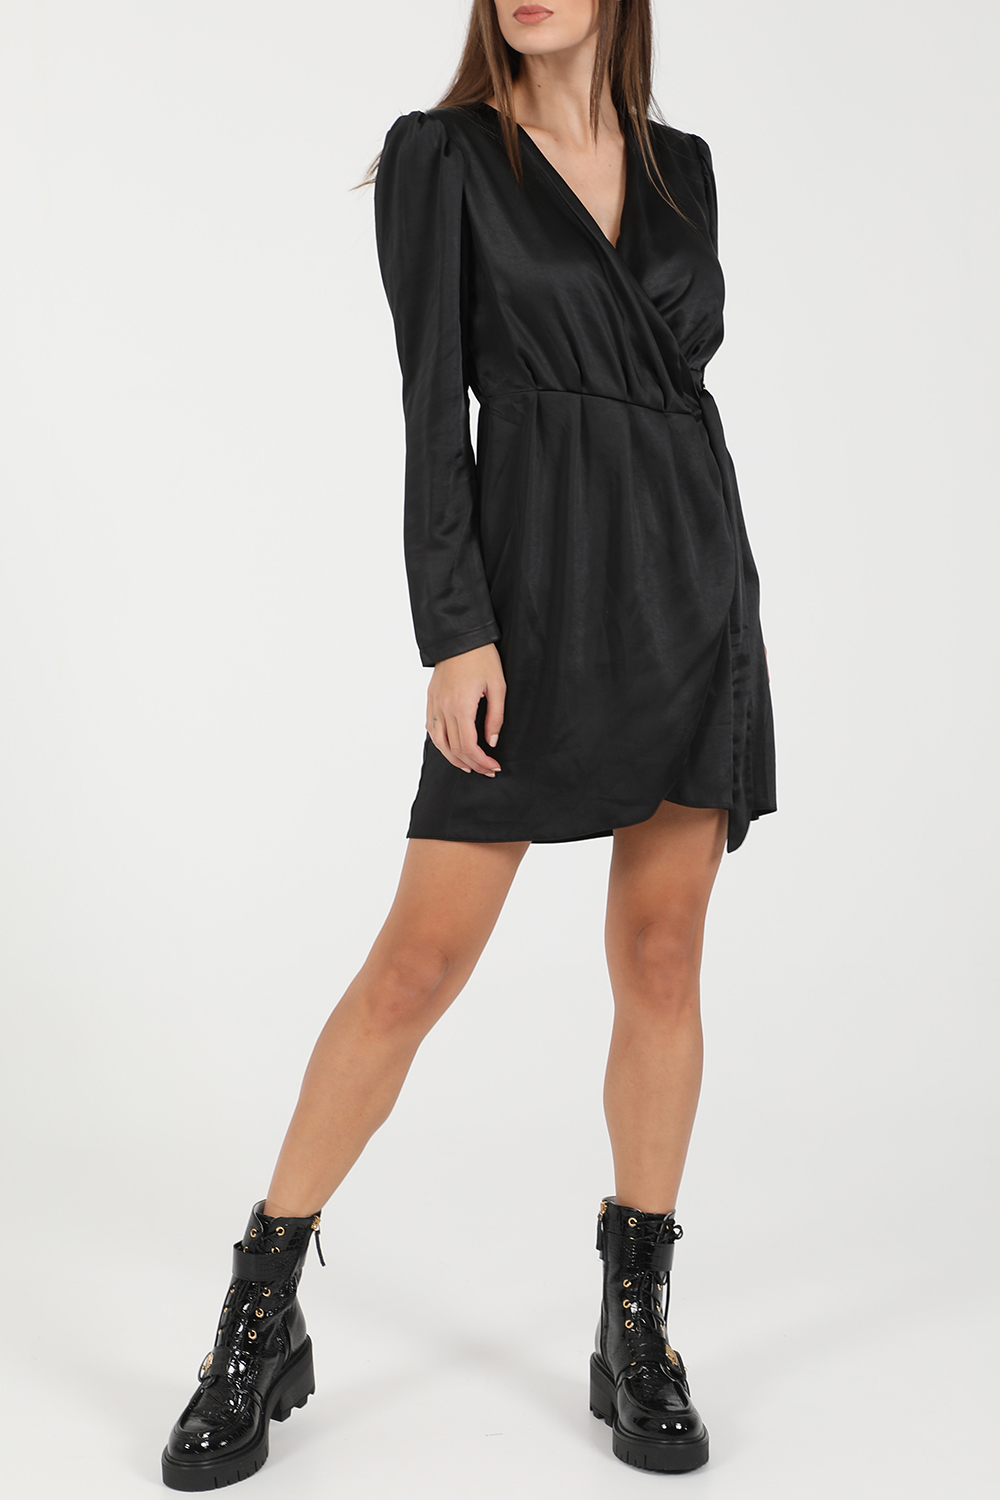 KENDALL + KYLIE – Γυναικείο μίνι φόρεμα KENDALL + KYLIE DRAPPED μαύρο 1825749.0-0071